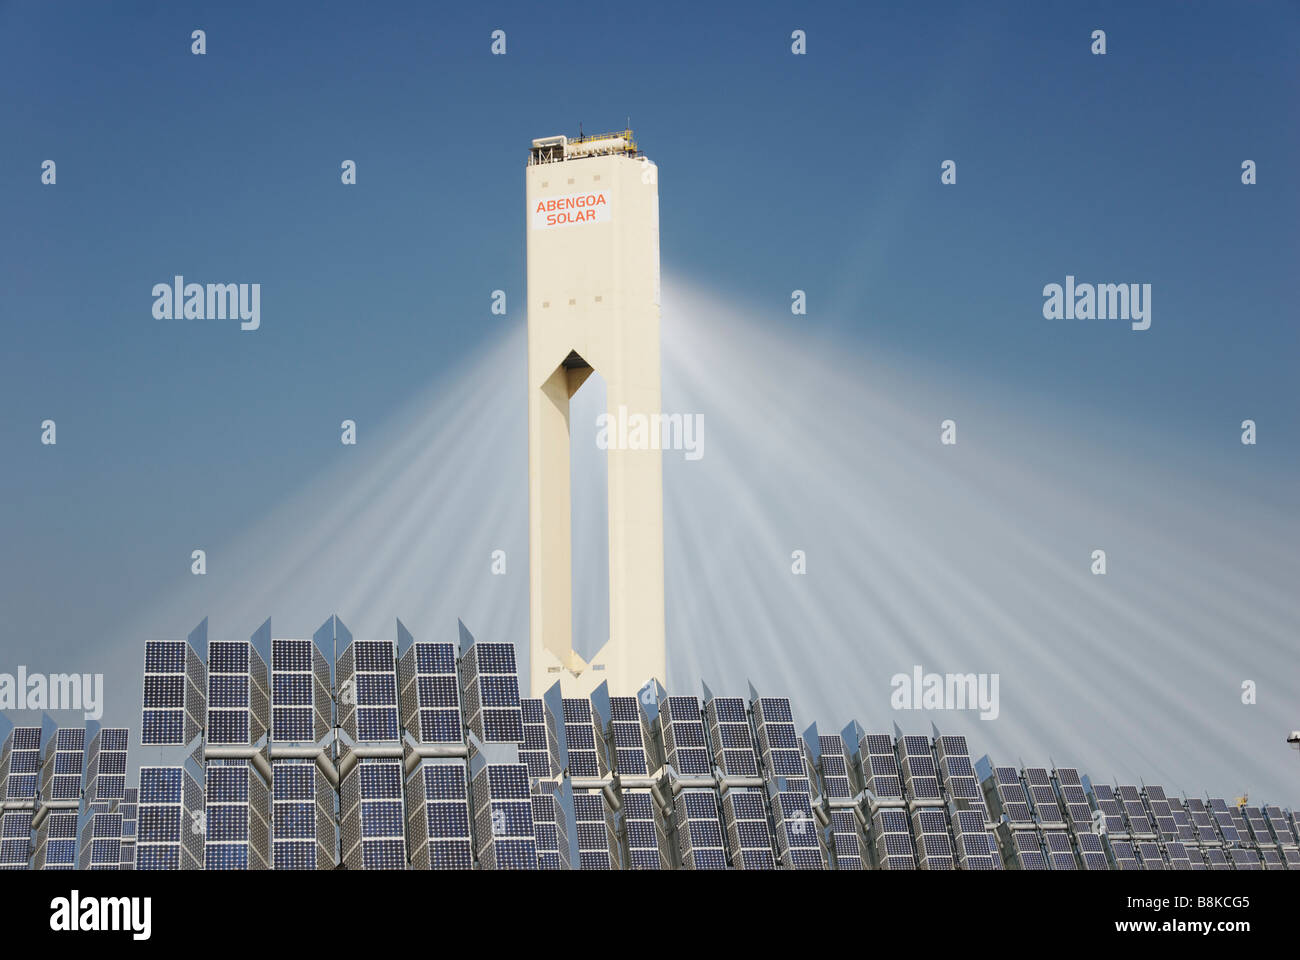 La tour solaire PS10 produit nettoyer le pouvoir thermoélectrique du soleil - Abengoa Solúcar plate-forme en Andalousie Espagne Banque D'Images